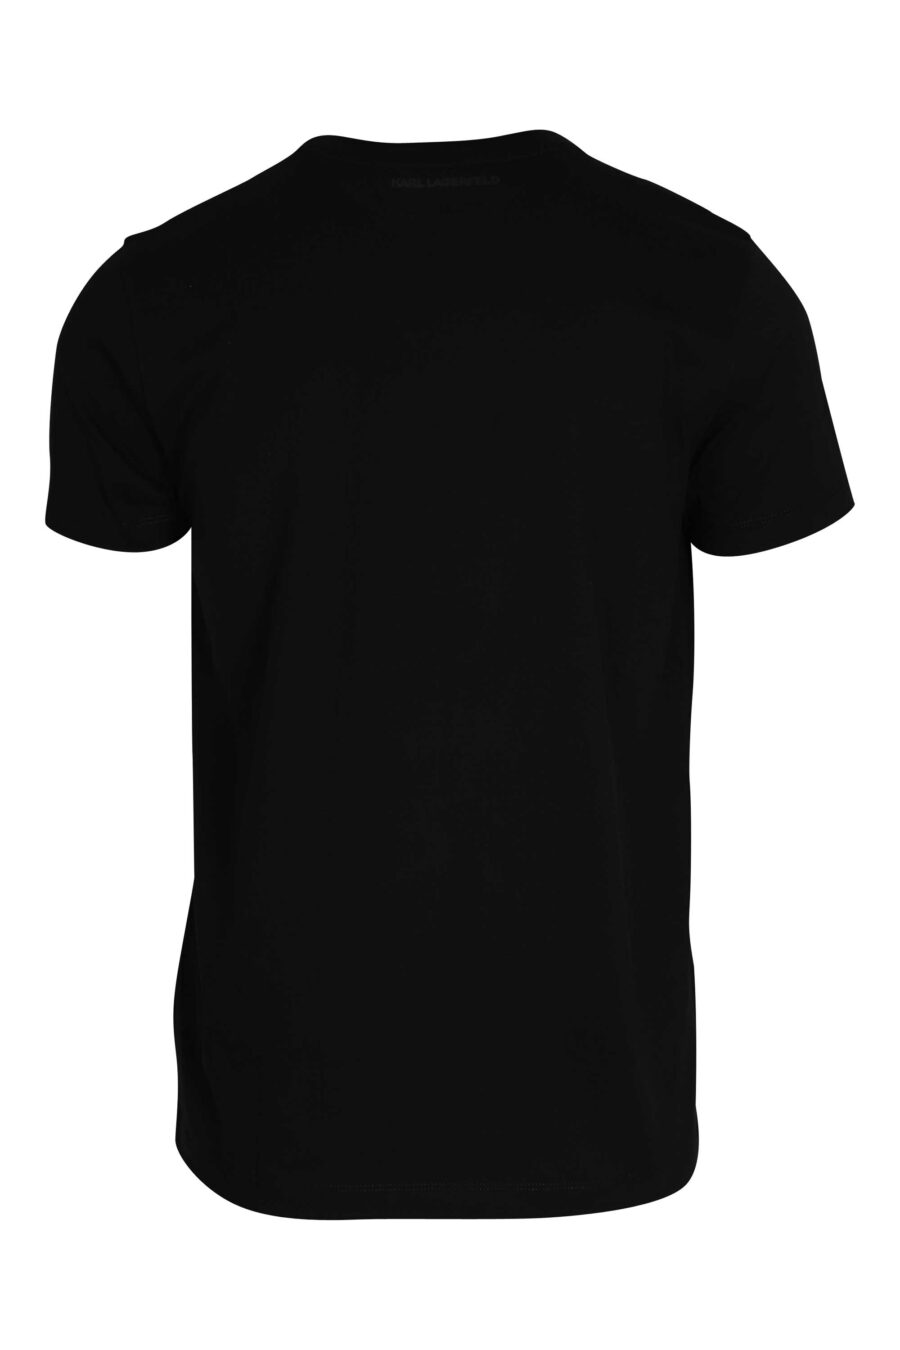 Schwarzes T-Shirt mit glänzendem schwarzem Maxilogo - 014543001 2